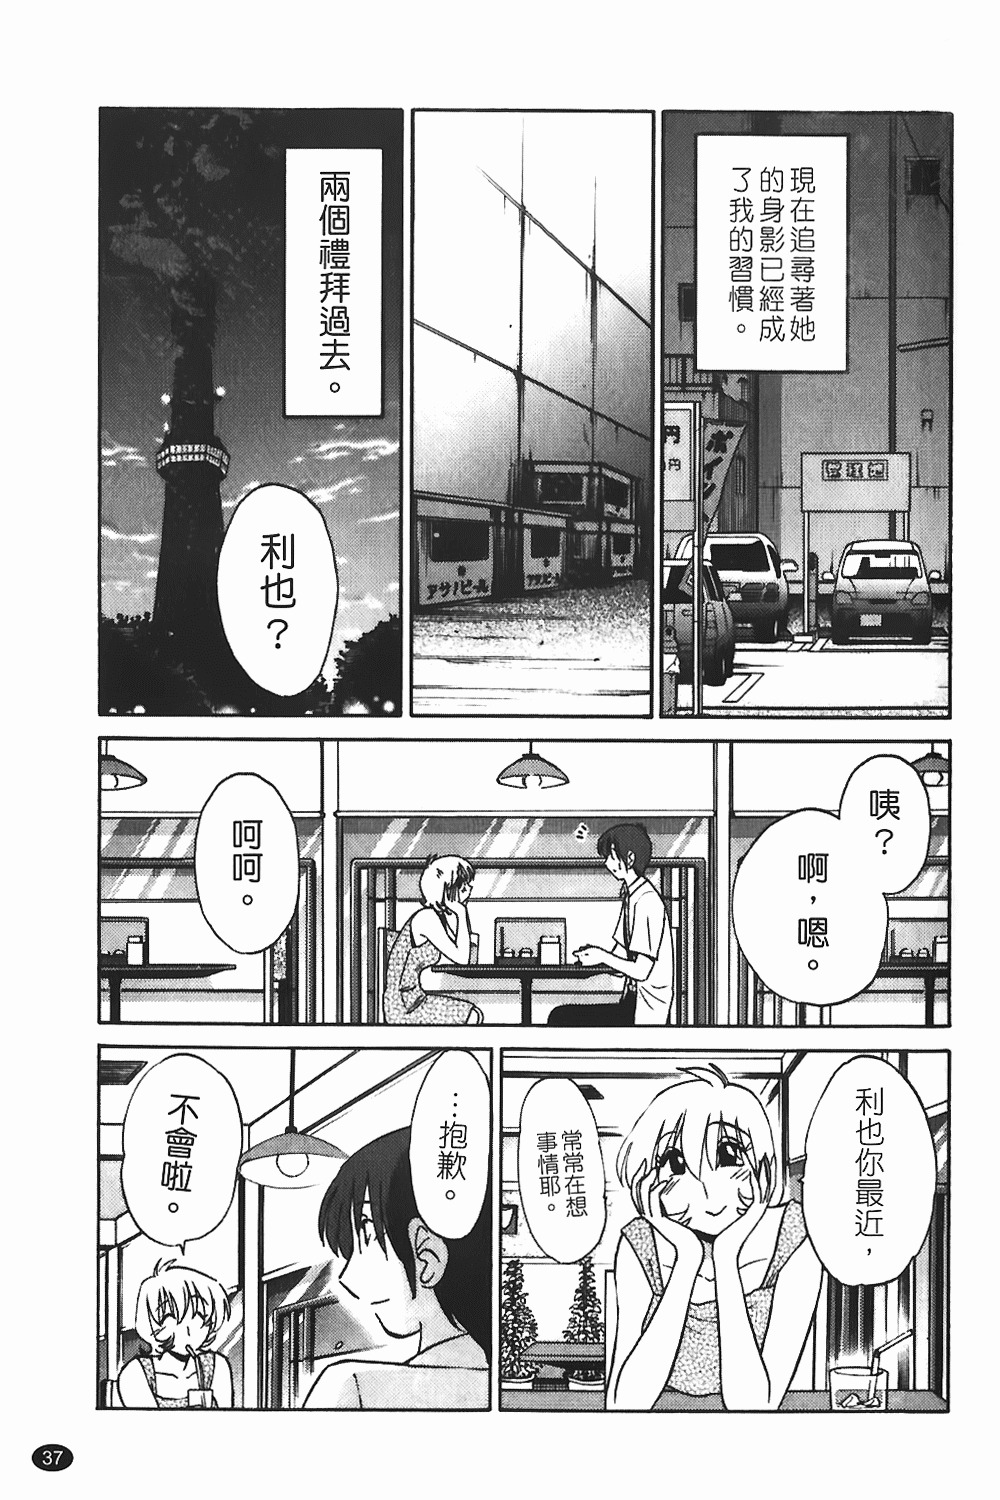 [TsuyaTsuya] Monokage no Iris 1 | 陰影中的伊利斯 1 [Chinese] page 34 full